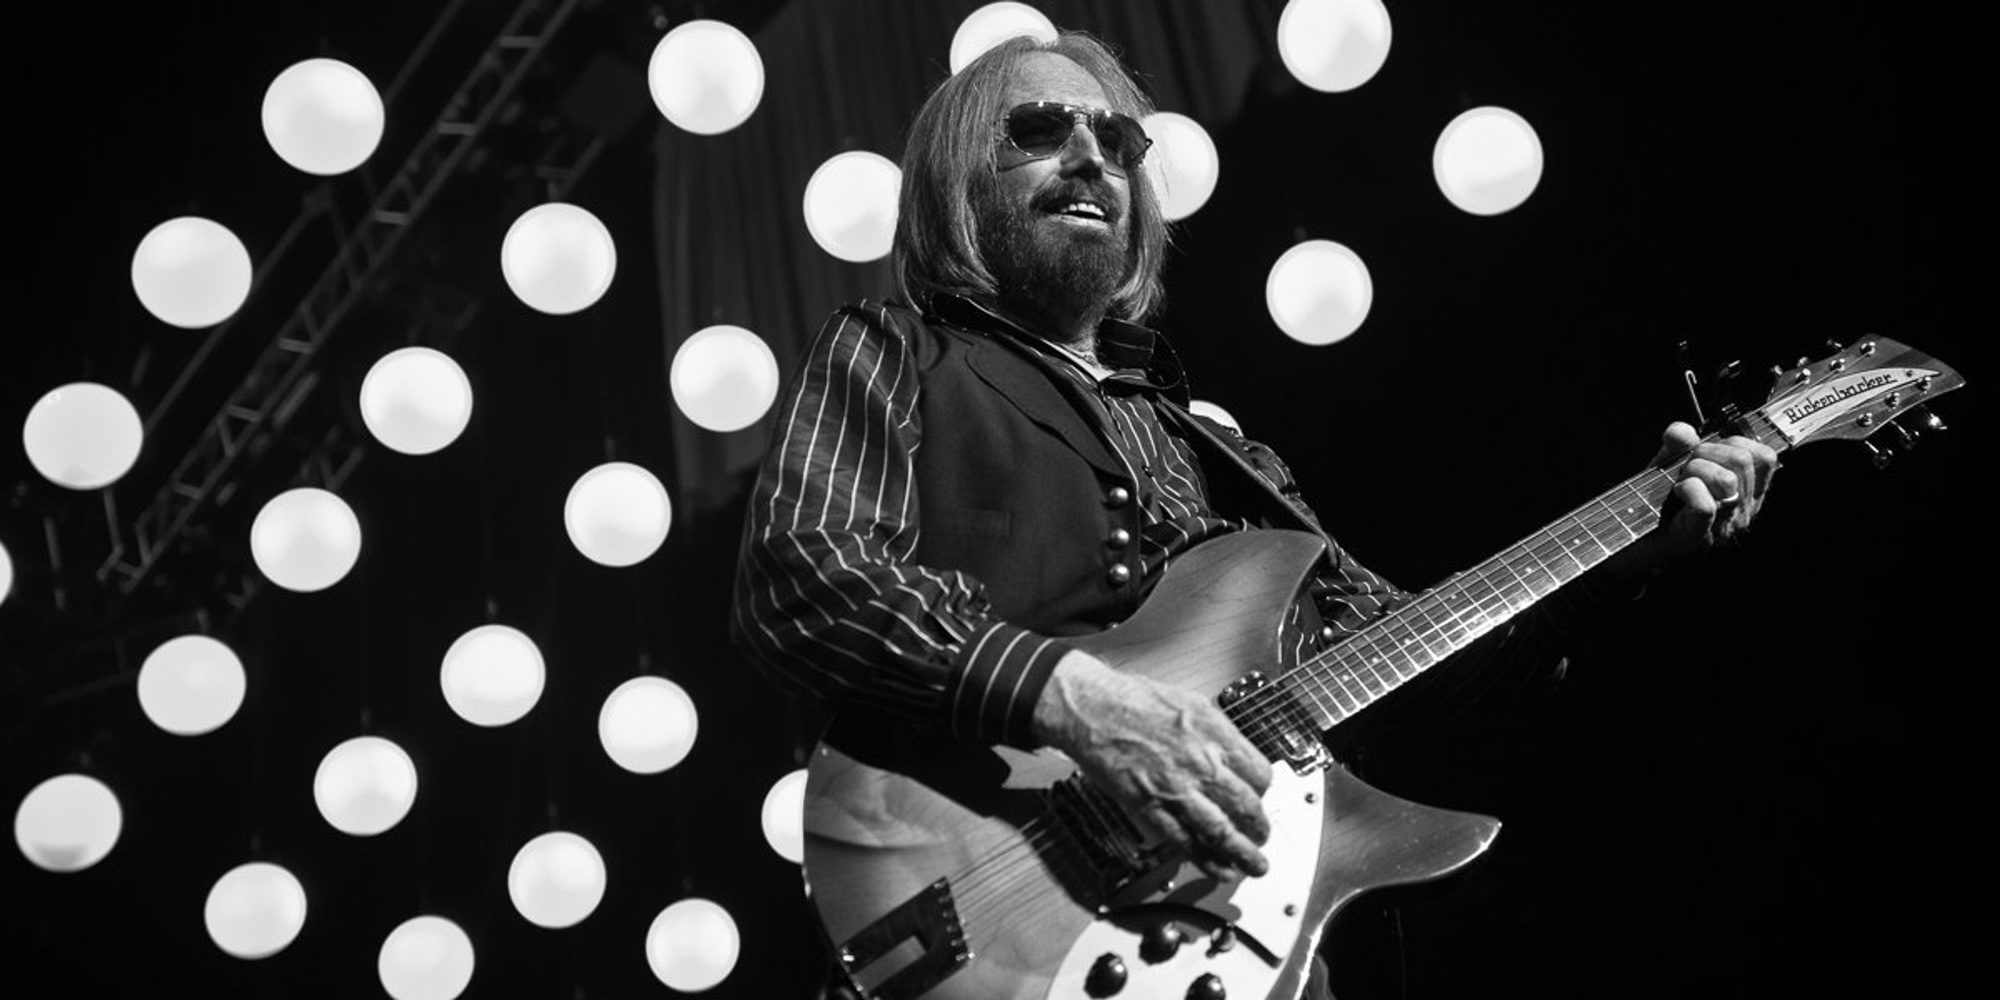 La música despide a Tom Petty tras su muerte a consecuencia de un paro cardíaco